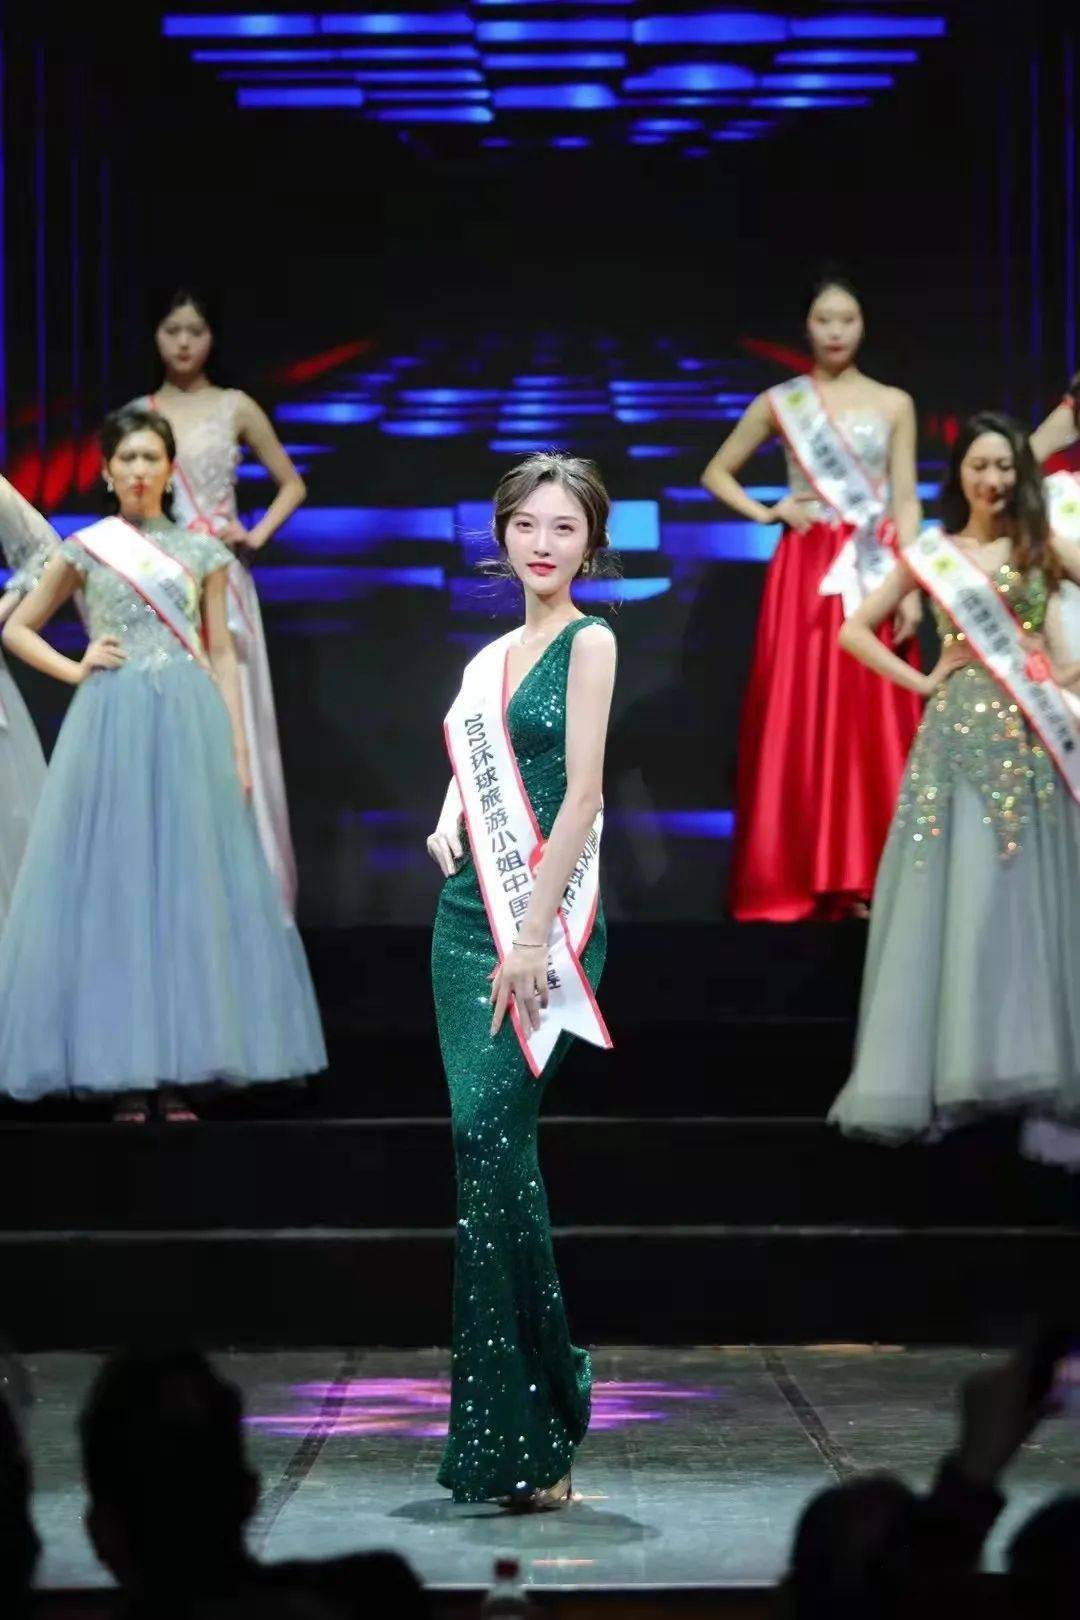 北川女孩荣获2021环球旅游小姐中国区总决赛"旅游"